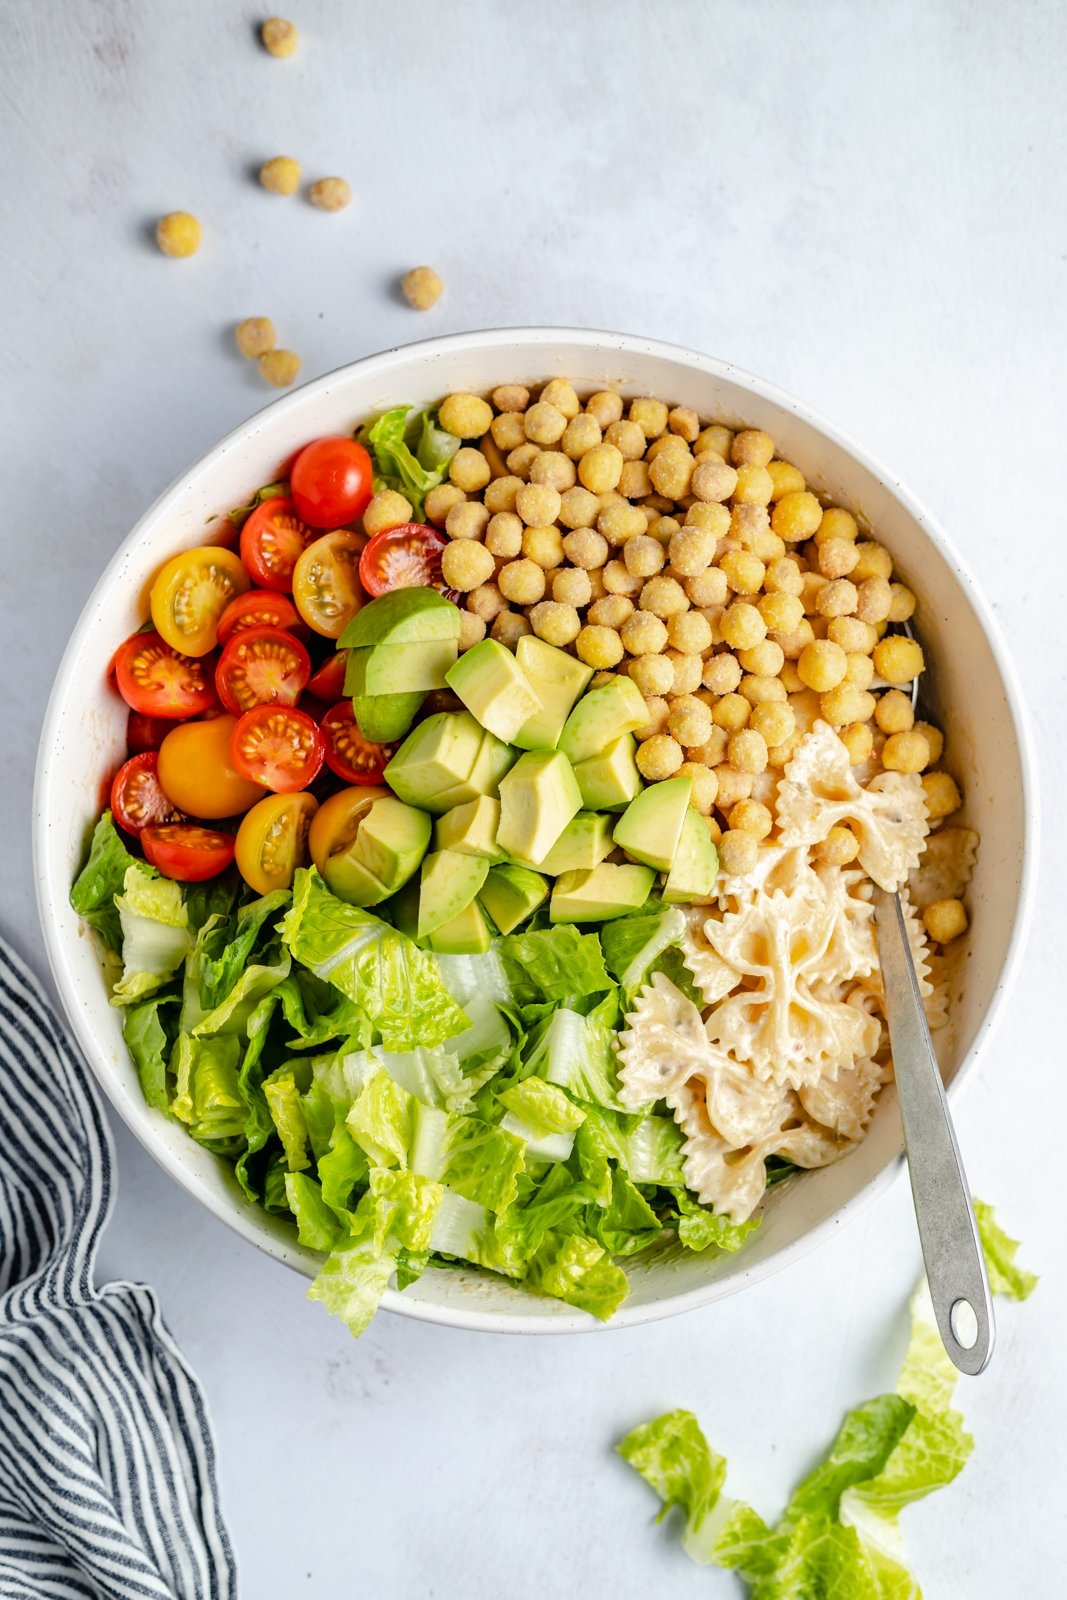 easy vegan caesar pasta salad in a bowl